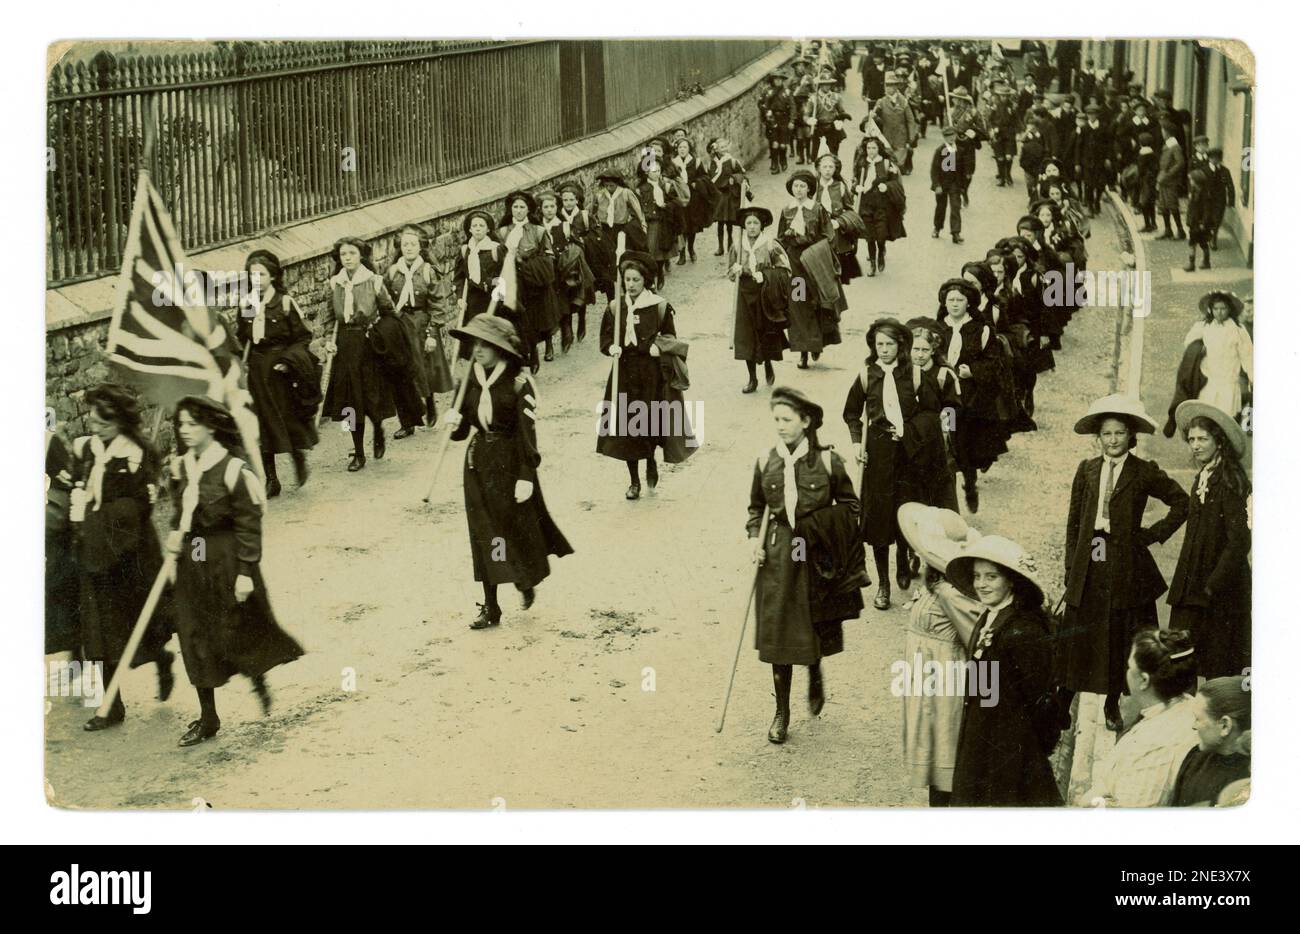 Des troupes patriotiques originales de guides de filles et de scouts de garçons défilant dans une ville, marchant avec un drapeau d'Union Jack, un rassemblement public de scoutisme, certains des spectateurs portent un ruban de revers, vers 1912, Royaume-Uni Banque D'Images